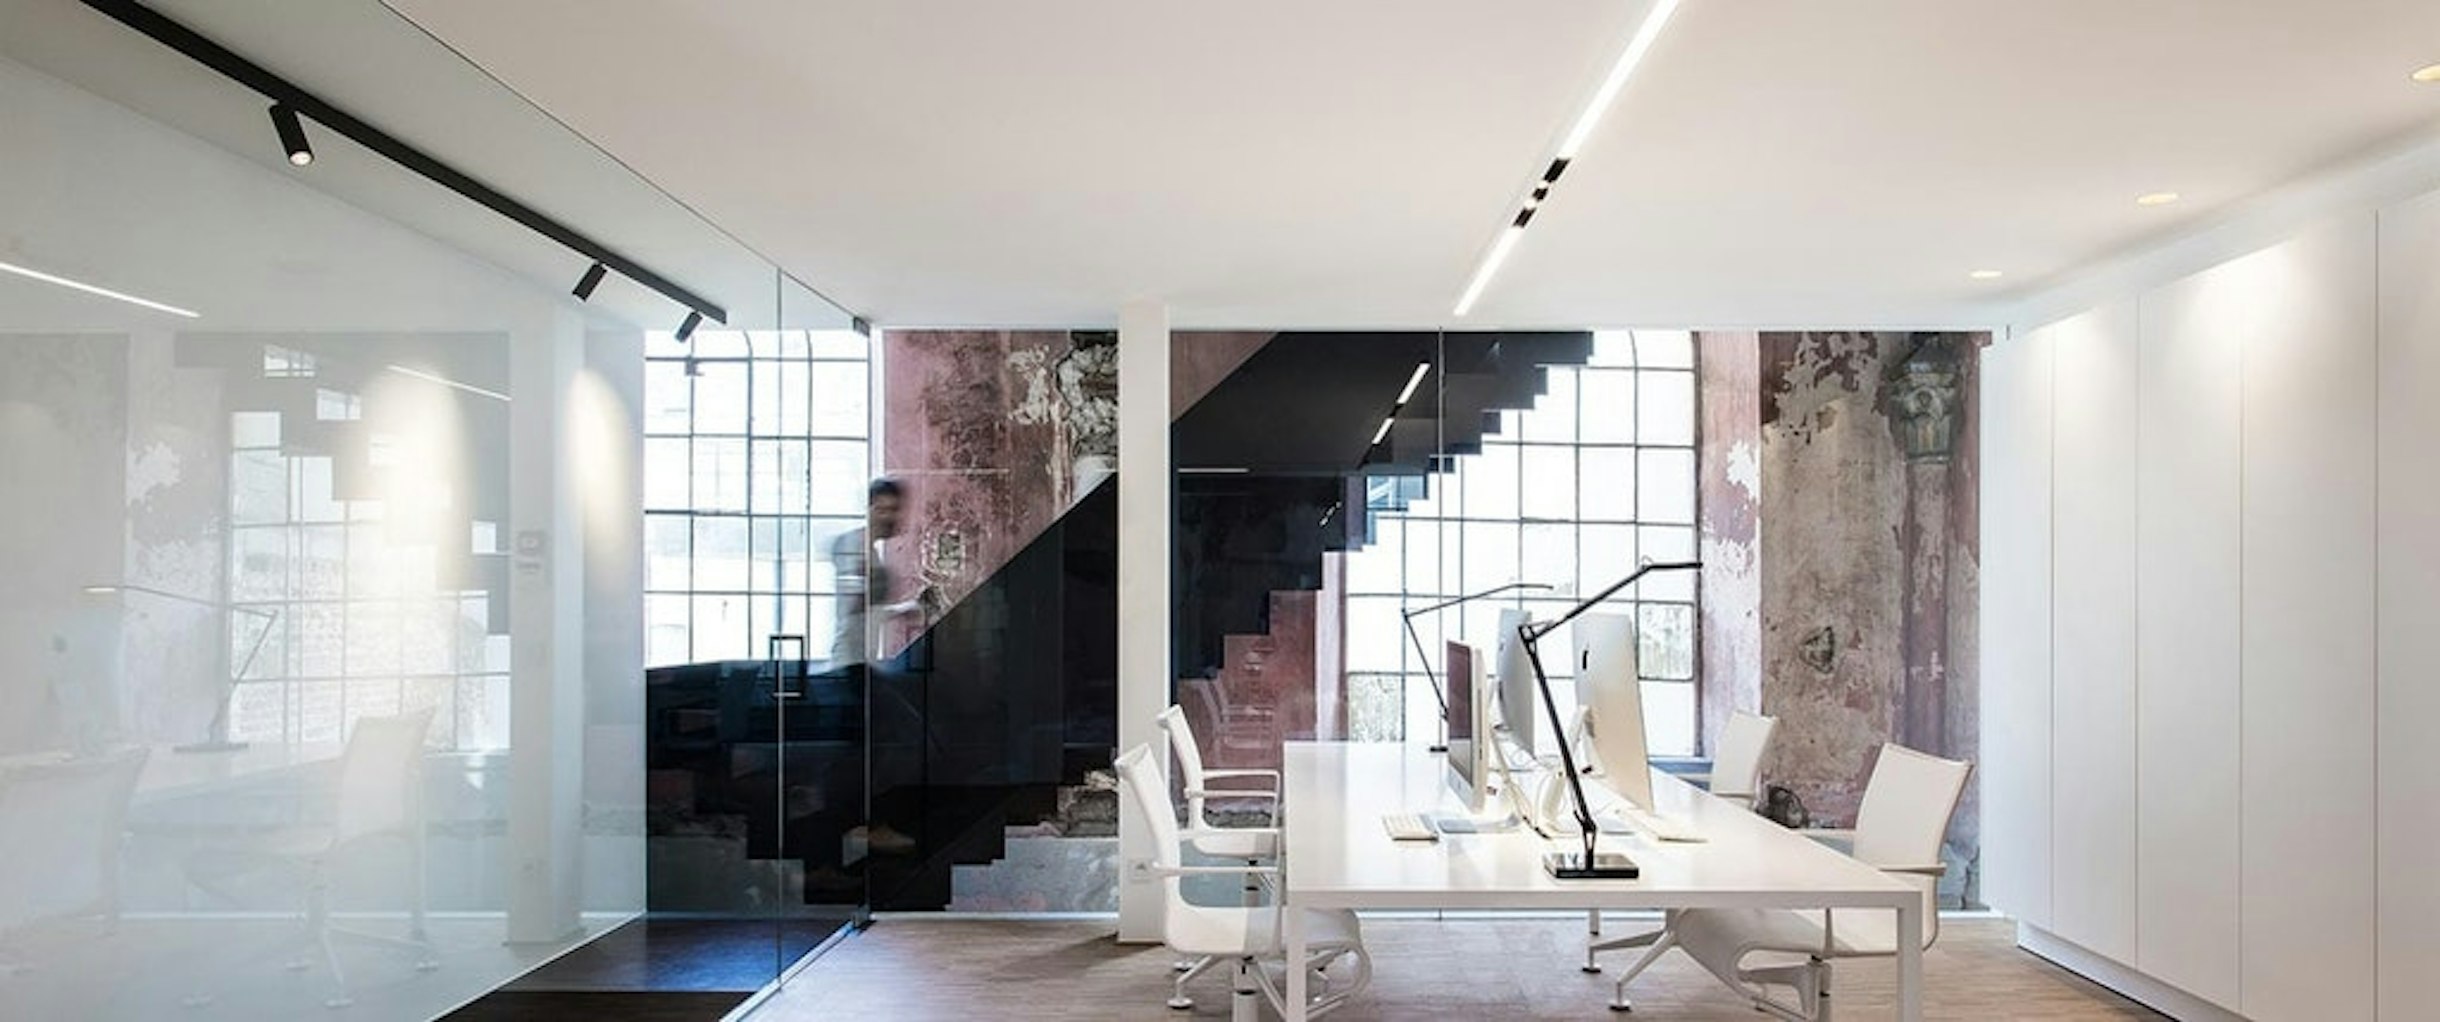 offices-klaarchitectuur-belgium-flos-07-1440x603